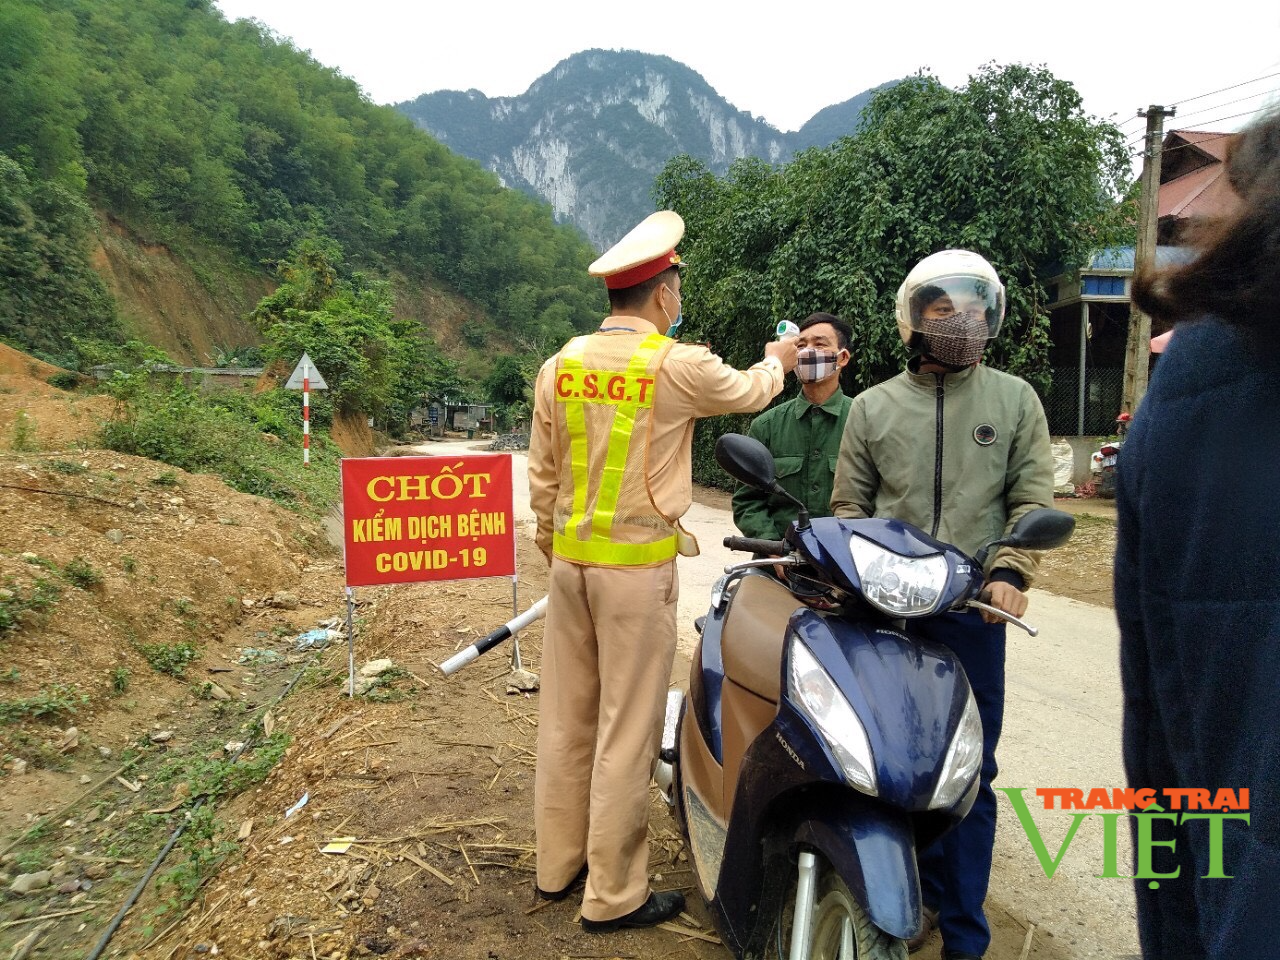 Cảnh sát giao thông Mai Châu: Xử lý nghiêm vi phạm trật tự an toàn giao thông - Ảnh 7.